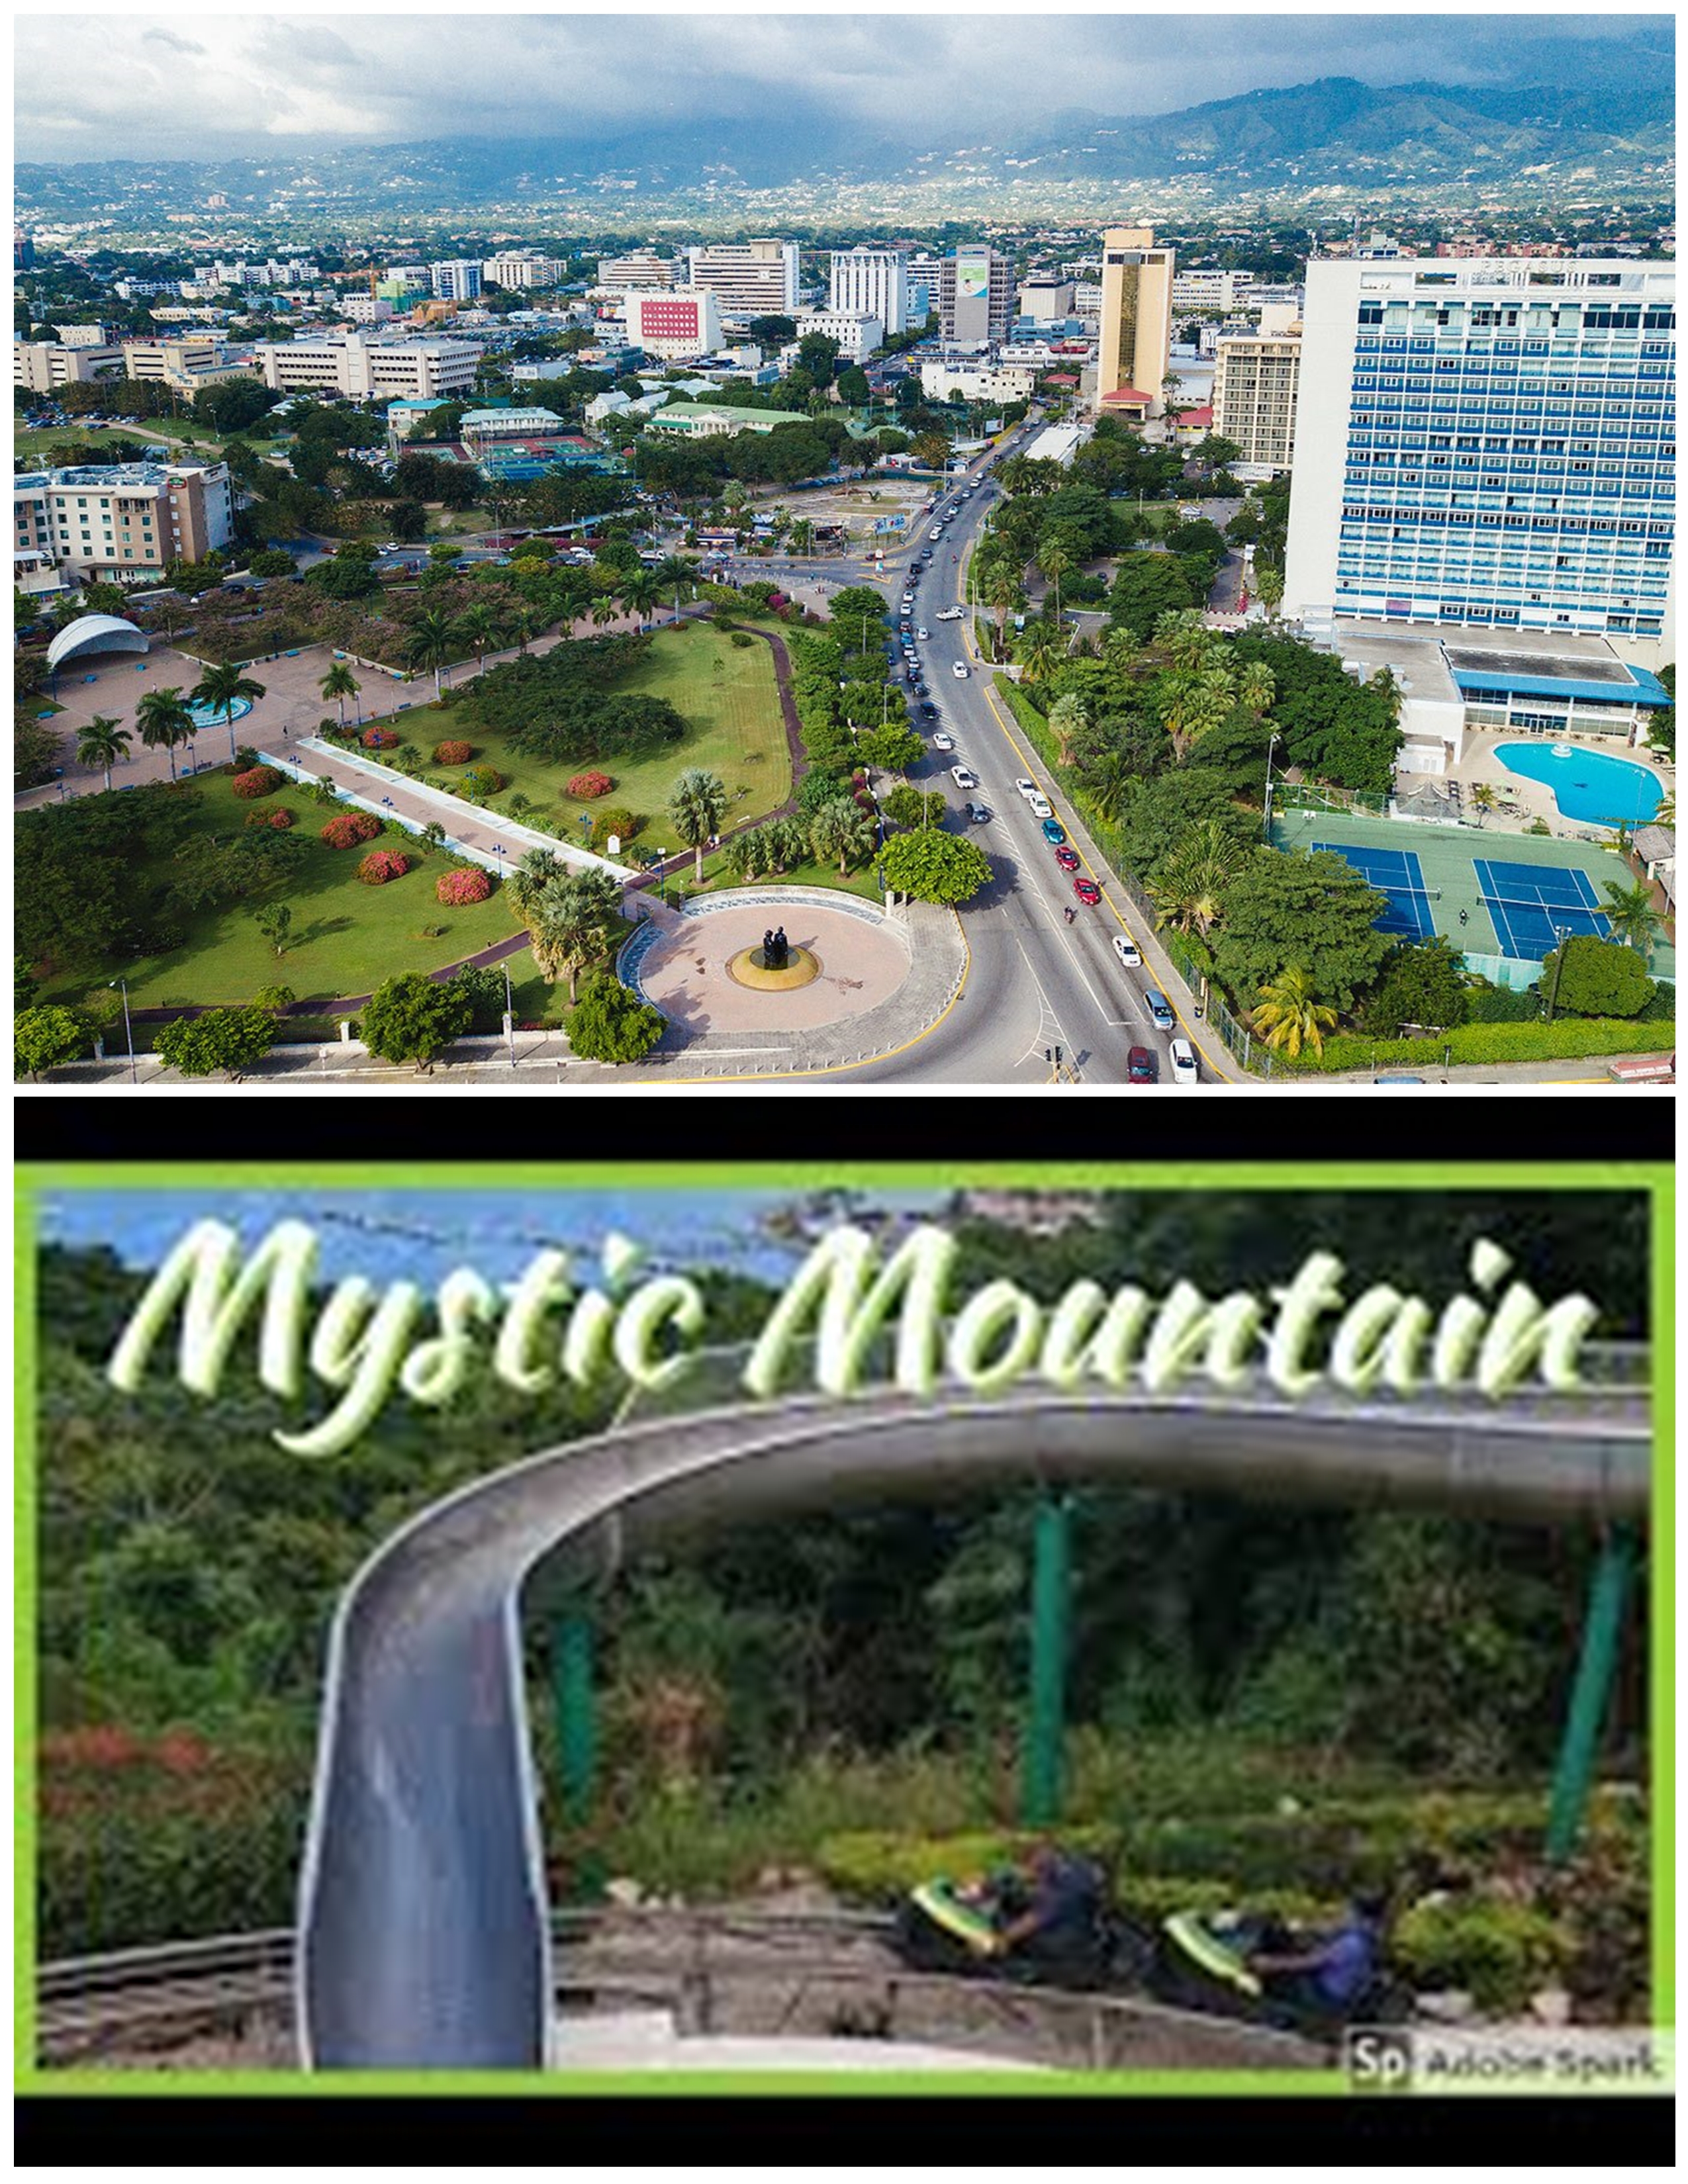 From New Kingston & Liguanea Area - Mystic Mountain ( Round Trip)